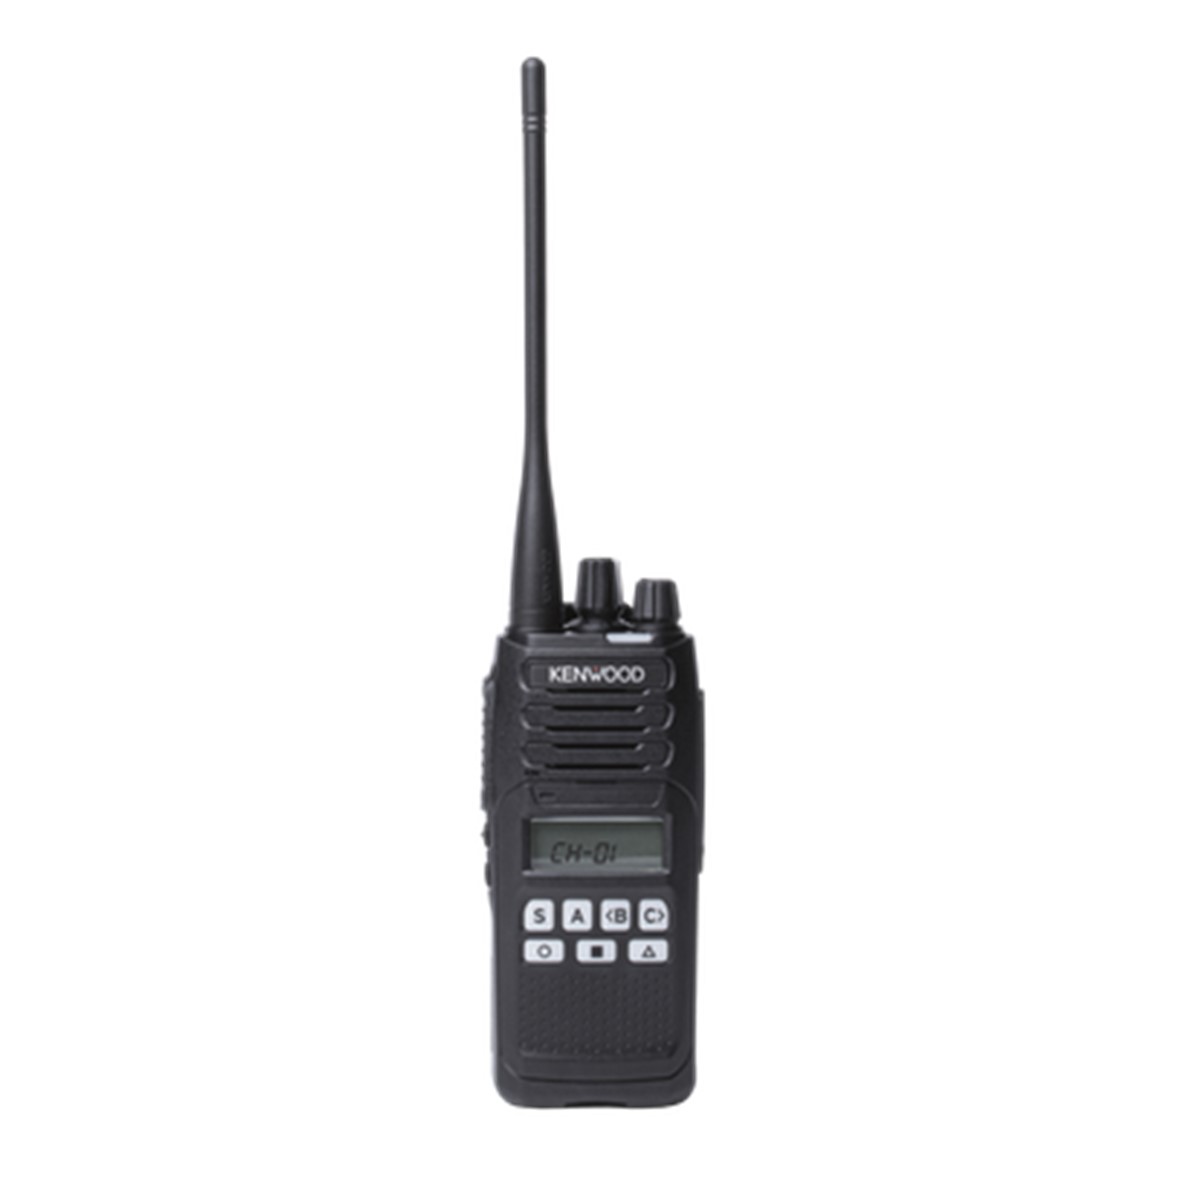 Radio KENWOOD NX-1300-DK2-IS Digital UHF 450-520 MHz con pantalla y teclado limitado intrínsecamente seguro